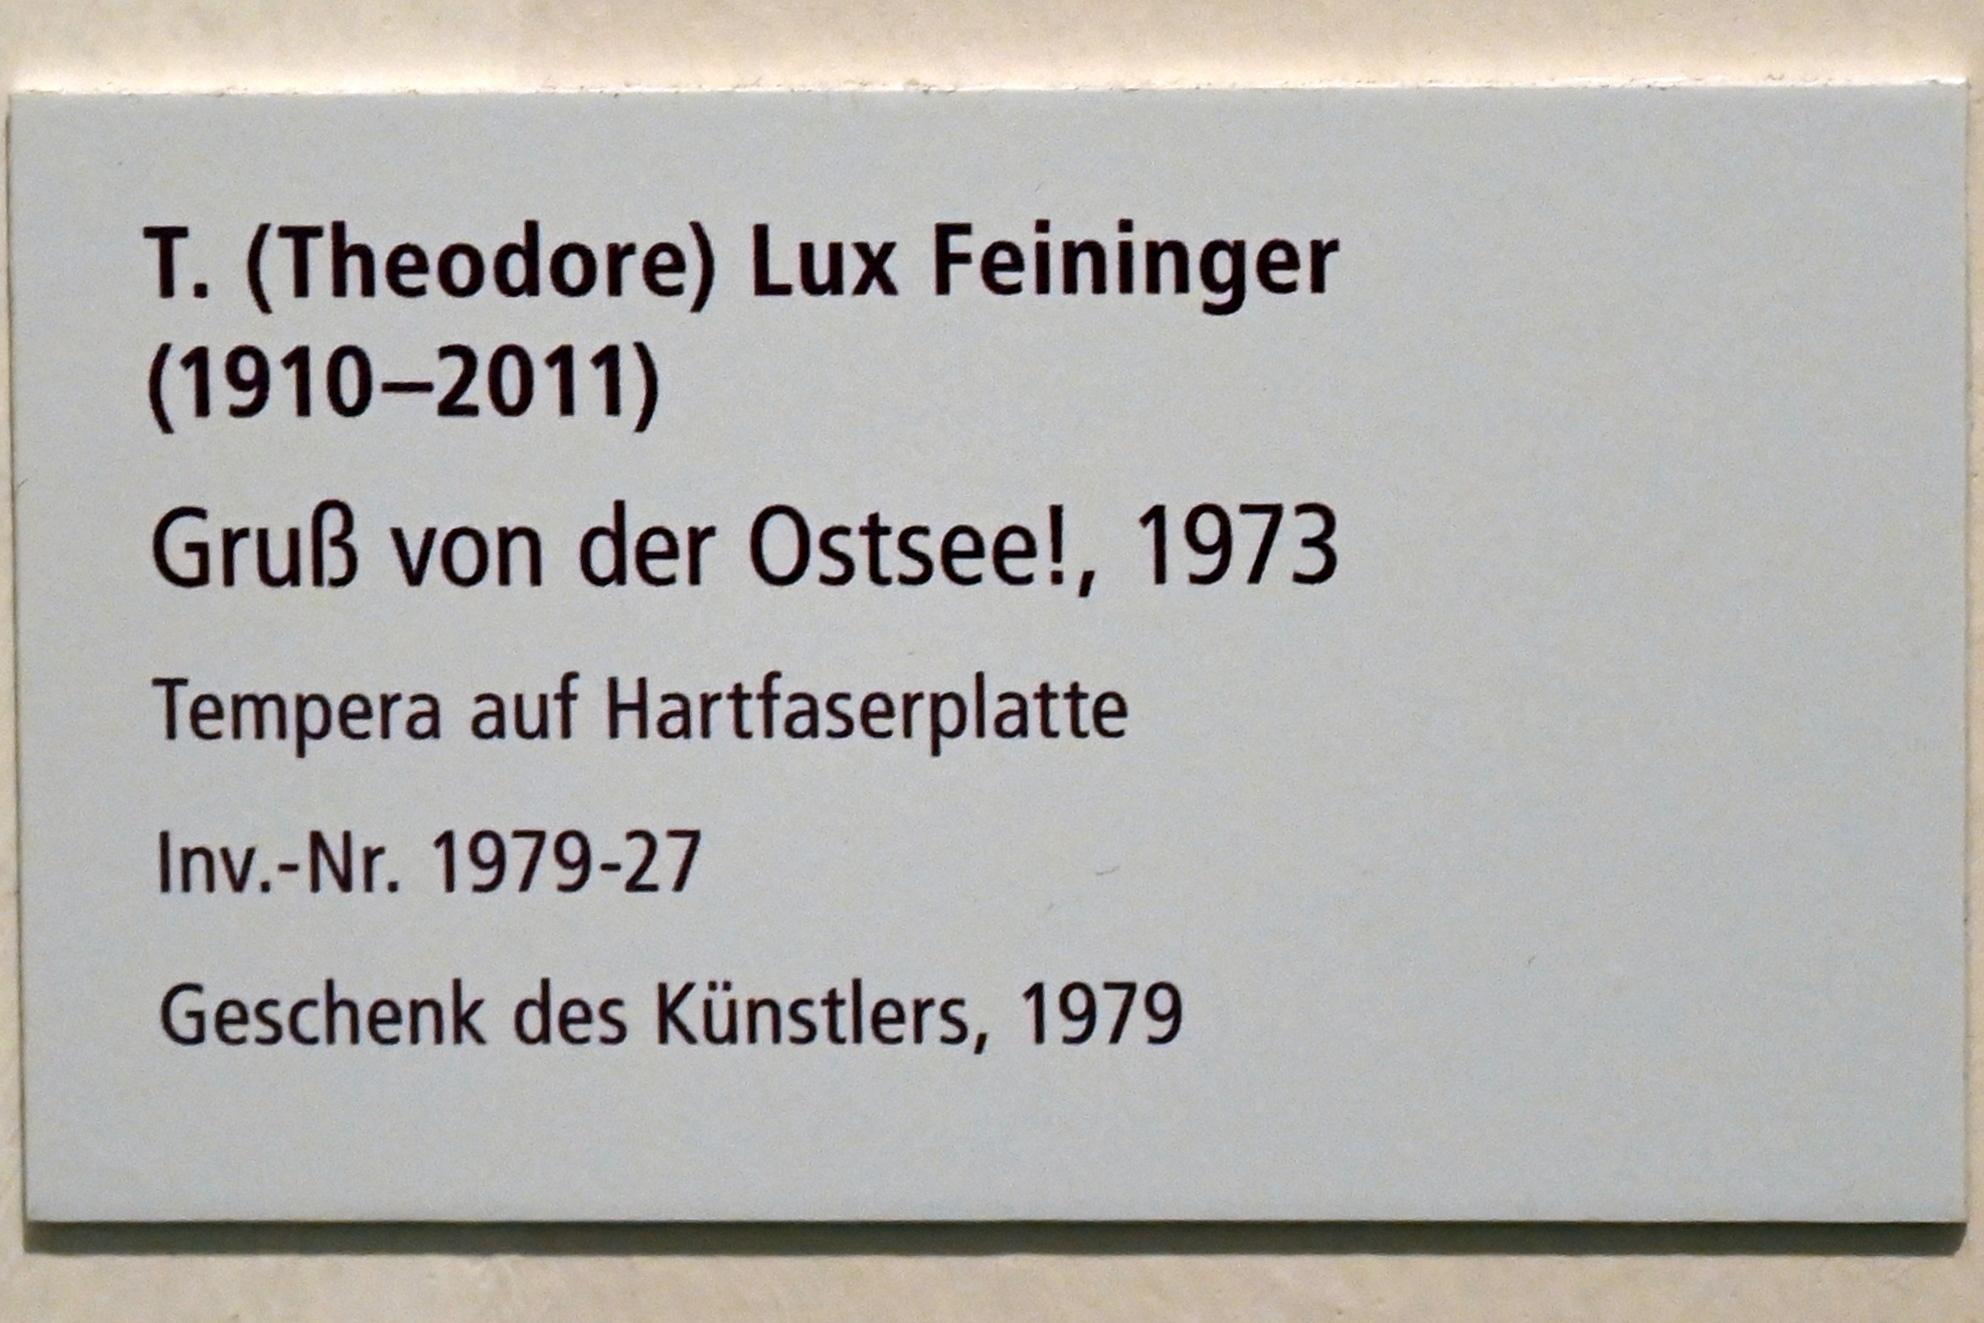 Theodore Lux Feininger (1973), Gruß von der Ostsee, Schleswig, Landesmuseum für Kunst und Kulturgeschichte, Galerie der Klassischen Moderne, 1973, Bild 2/2